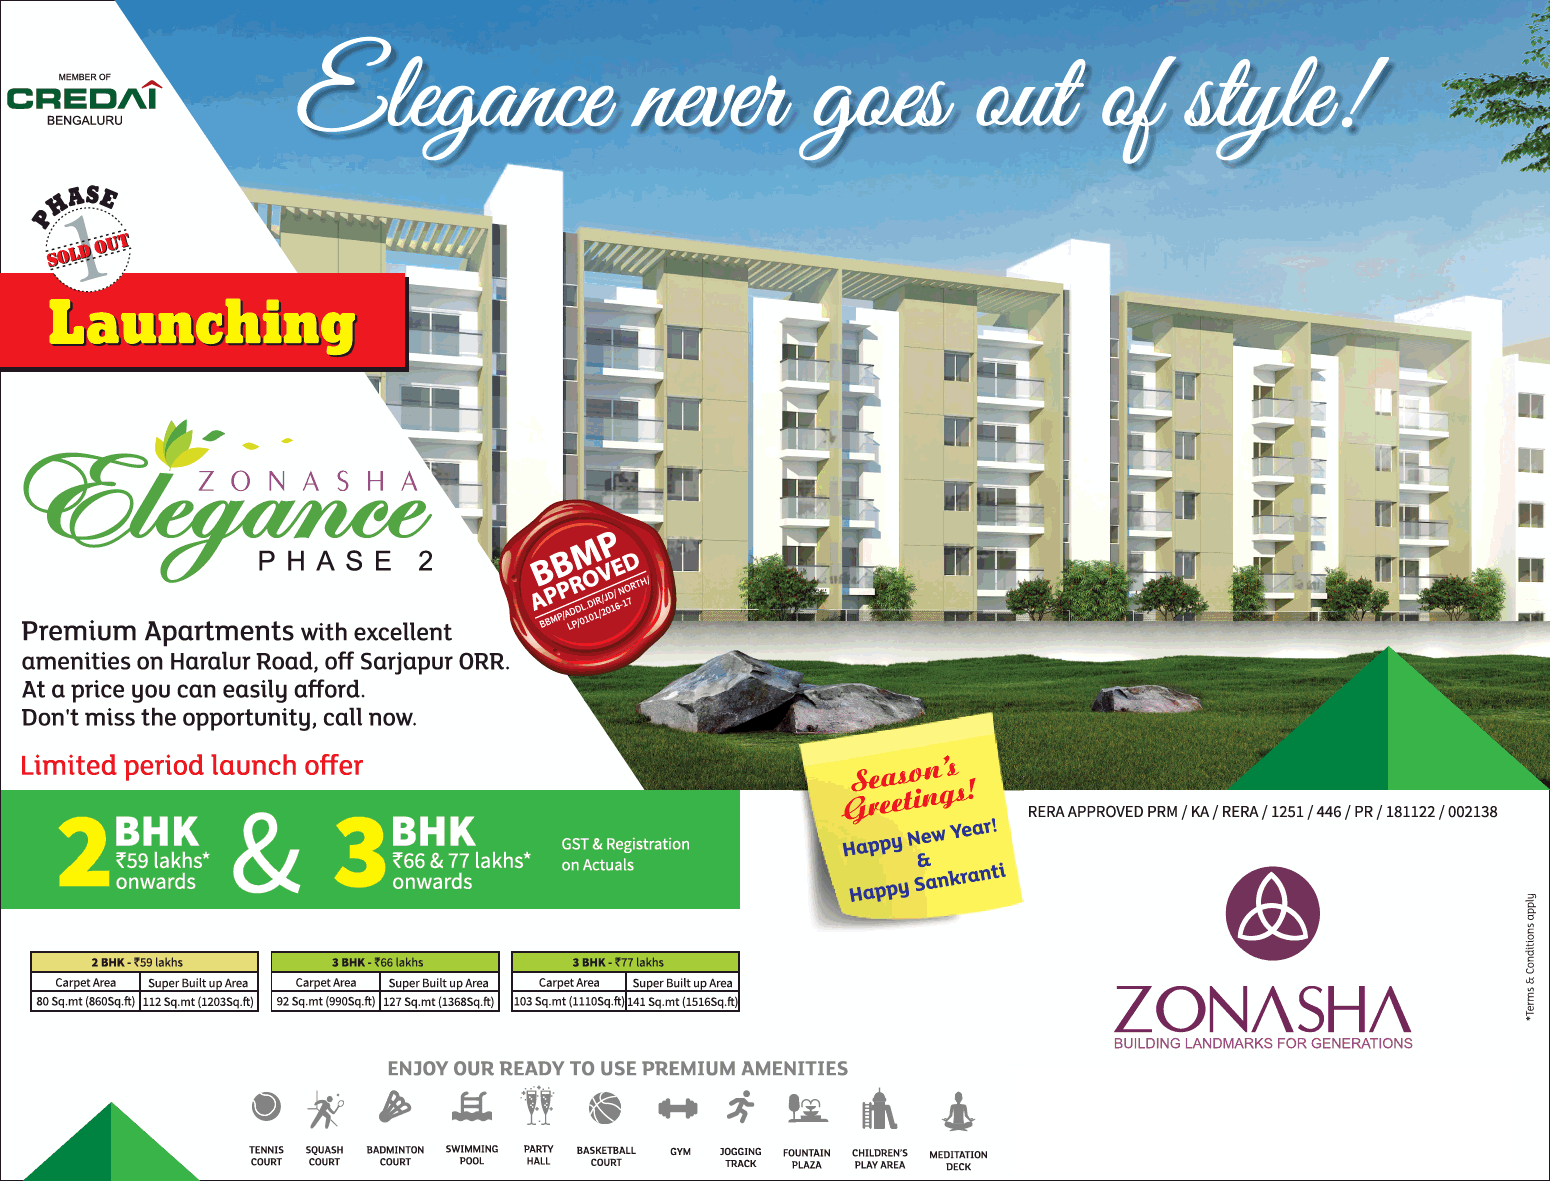 Zonasha launching 2 & 3 bhk at Elegance Phase 2 in Bangalore Update